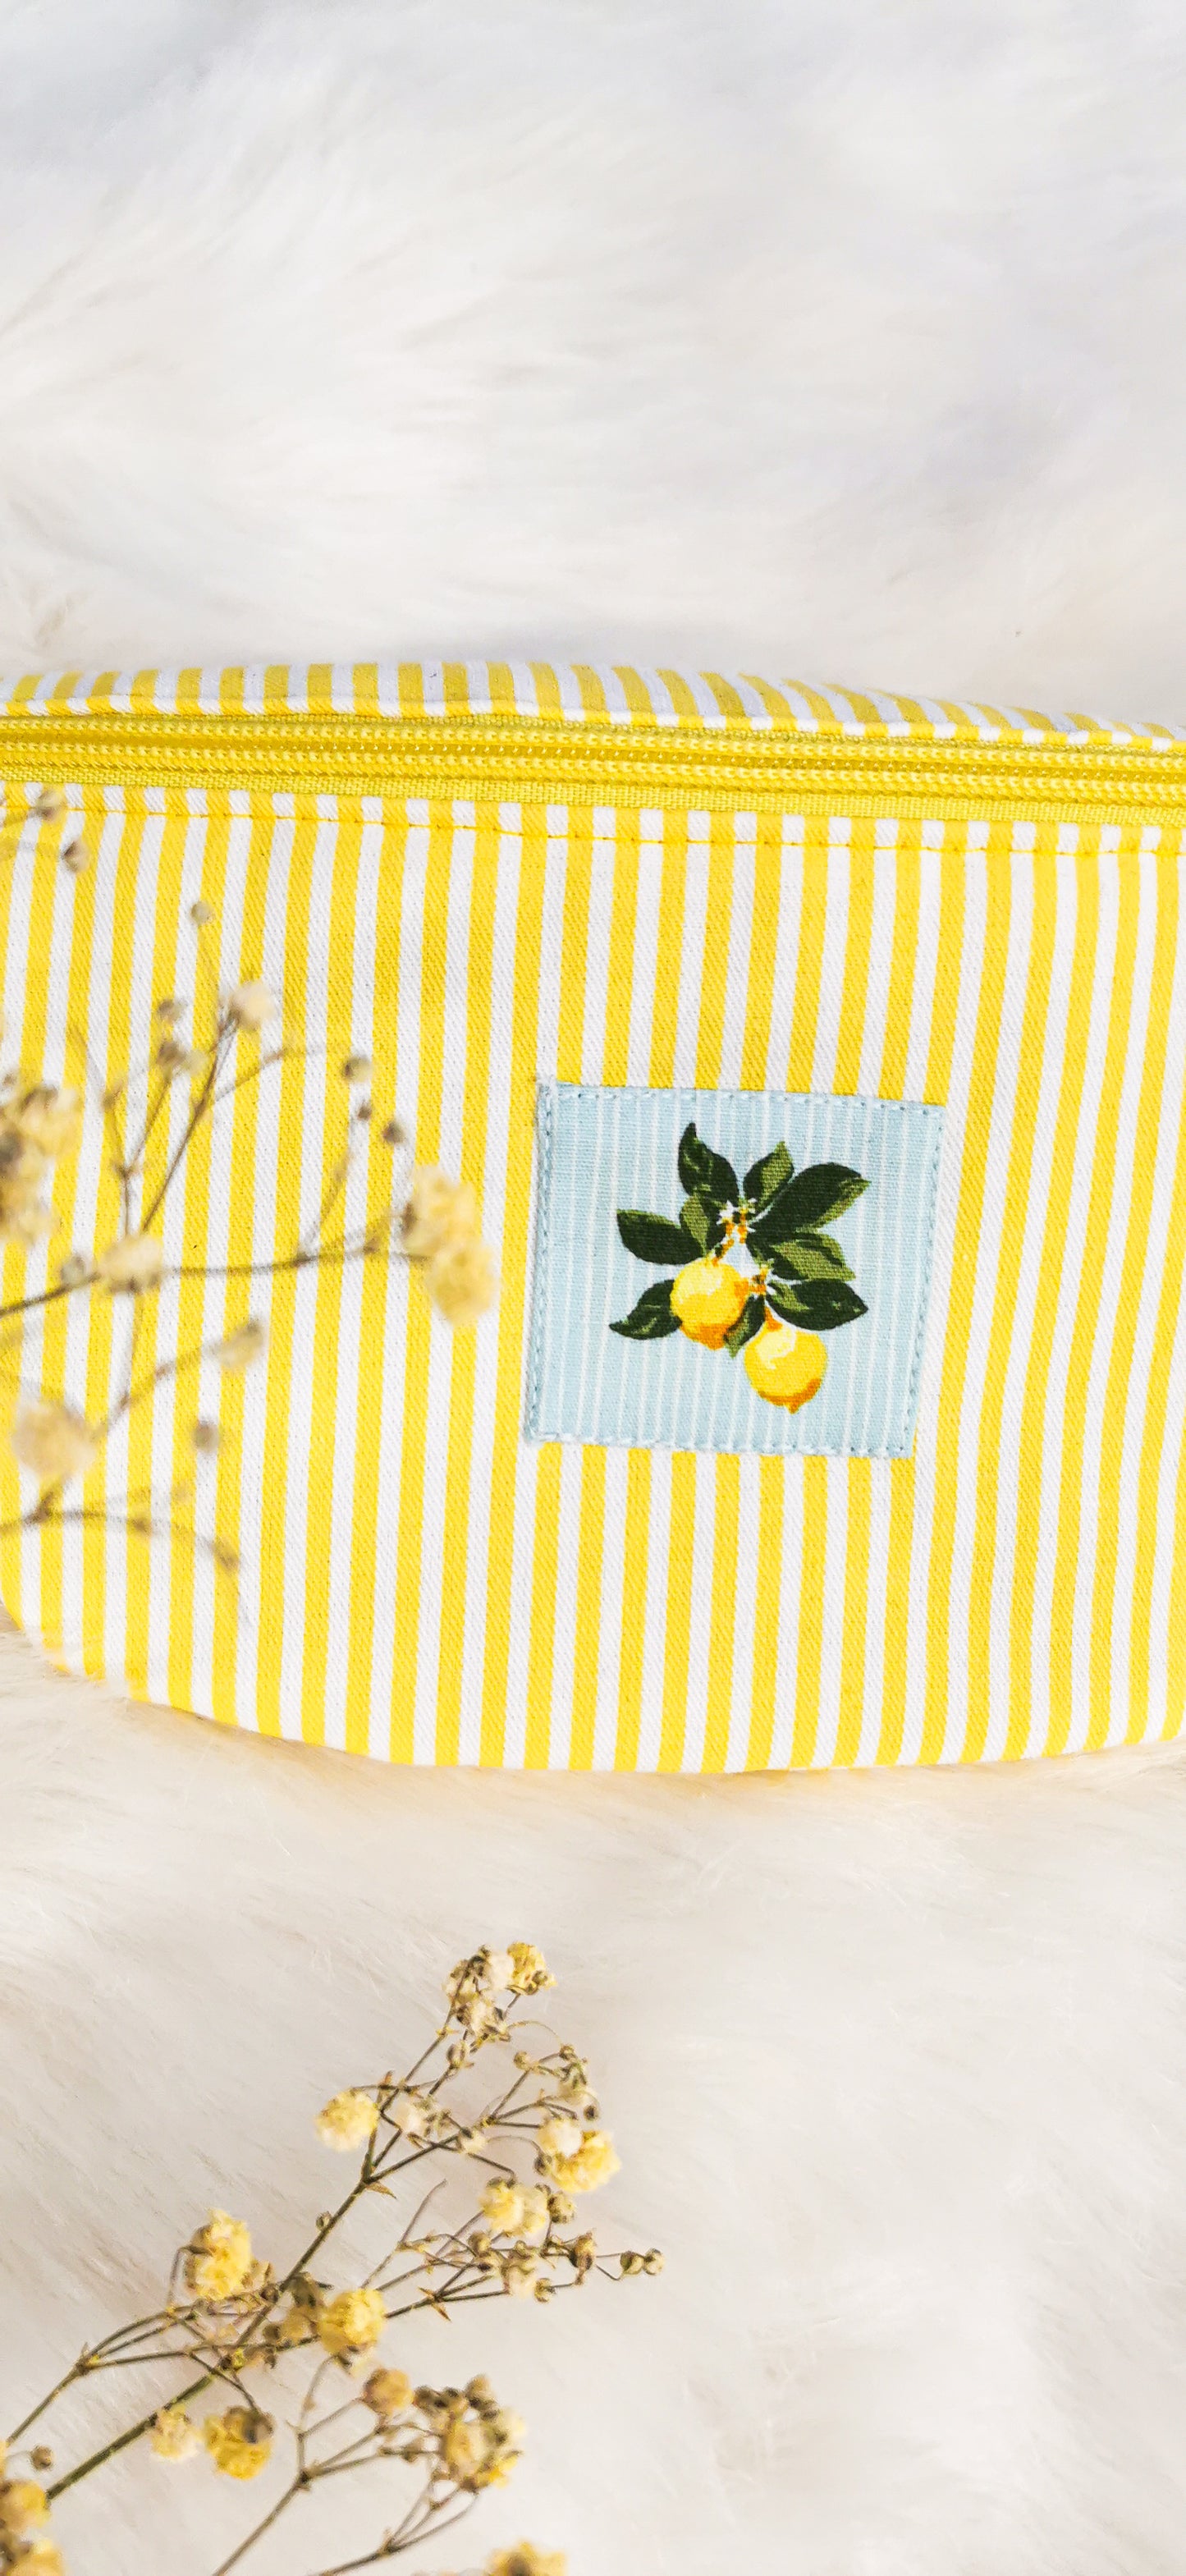 Canvas Hipbag Bauchtasche Cross Body Bag Gelb/Weiß Zitronen